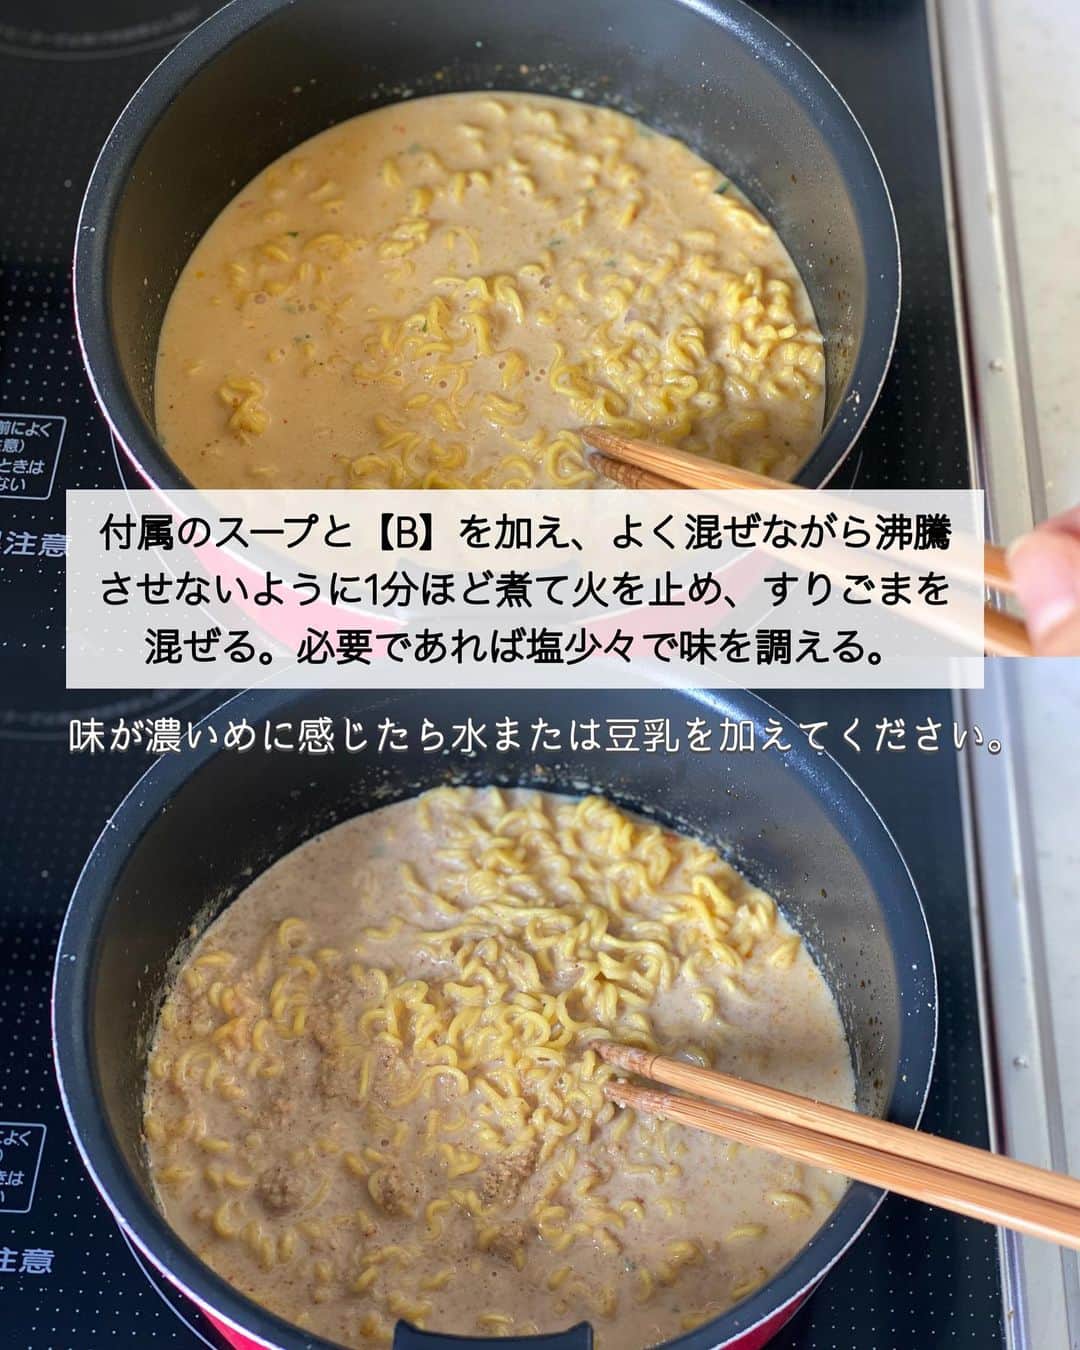 ちおりさんのインスタグラム写真 - (ちおりInstagram)「【インスタントラーメンで🍜】 ⁡ ⁡ 他のレシピを見る→ @chiori.m.m をチェック✅ ⁡ ⁡ ━︎━︎━︎━︎━︎━︎━︎━︎━︎ 濃厚ラクうま坦々麺 ━︎━︎━︎━︎━︎━︎━︎━︎━︎ ⁡ ⁡ こんばんは(^ ^) 今日はインスタントラーメンを使った坦々麺です。 ⁡ サッと作れてお腹を満たしてくれる袋麺は 忙しい日の味方ですよね！ ひと手間加えるだけでより濃厚な味わいになり また違った美味しさがたのしめます。 ⁡ 最近は娘達もすっかり大人になって😌 『今日は夕飯いらないよ』なんて事も時々あって ⁡ たまの1人ご飯は楽したいけど 美味しいものも食べたい… そんな時にもよく作るんですが ⁡ 水菜と一緒に食べるとシャキシャキ食感が加わって 栄養バランスもいいのでおすすめ👌🏻 お試しいただけたら嬉しいです^ ^ ⁡ ランチにもぜひ😊 ⁡ ⁡ ________________________________________ ⁡ ⁡ ⁡ ✍︎✍︎recipe ✍︎ ✍︎ ⁡ ⁡ 👩‍🌾【材料】1人分 •インスタントラーメン（みそ味）….…1袋 •豚ひき肉……………………………60g A豆板醤、おろし生姜…………各小さじ1/2 •水…………………………………300㎖ B無調整豆乳……………………200㎖ Bにんにくチューブ…………小さじ1/2 B砂糖……………………………少々 •すりごま………………………大さじ2〜3 •刻みねぎ………………………適量 •ラー油またはごま油………適量 ⁡ ⁡ ⁡ ________________________________________ ⁡ ⁡ ⁡ 👩‍🍳【作り方】 ❶鍋に油はひかずに中火で熱し、ひき肉を炒め、肉の色が変わってきたら【A】を加えて味付けし、取り出す。 ⁡ ❷鍋に水を入れて中火で熱し、沸騰したらインスタントラーメンを加えて麺がほぐれるまで1分30秒煮る。 ⁡ ❸付属のスープと【B】を加え、よく混ぜながら沸騰させないように1分ほど煮て火を止め、すりごまを混ぜる。必要であれば塩少々で味を調える。（味か濃いめに感じたら水または豆乳を加えてください。） ⁡ ❹器に盛り、炒めたひき肉、ねぎ、好みで水菜をのせ、ラー油またはごま油をたらす。 ⁡ ⁡ ⁡ ________________________________________ ⁡ ⁡ ⁡ 📝【POINT】 •すりごまは香りがとばないように 火を止めてから加えてください。 ⁡ ⁡ ⁡ ≡≡︎≡︎≡︎≡︎≡︎≡︎≡︎≡︎≡︎≡︎≡︎≡︎≡︎≡︎≡︎≡︎≡︎≡︎≡︎≡︎≡︎≡︎≡︎≡︎≡︎≡︎≡︎≡︎≡︎≡︎≡︎≡︎ 【✅新刊レシピ本のお知らせ】 📕ちおり流くり返し作りたいおかず 🙇🏻‍♀️おかげ様で書籍累計10万部を突破しました。 ⁡ ⁡ 全国の書店、Amazon、楽天ブックス 宝島チャンネルにて発売中です。 ⁡ ➤ ➤ ➤ @chiori.m.m のストーリーハイライト。 プロフィールのリンクからご覧いただけます😊 📗ちおりの簡単絶品おかず１、２ 既刊もぜひご覧いただきたいです。 ⁡ ≡︎≡︎≡︎≡︎≡︎≡︎≡︎≡︎≡︎≡︎≡︎≡︎≡︎≡︎≡︎≡︎≡︎≡︎≡︎≡︎≡︎≡︎≡︎≡︎≡︎≡︎≡︎≡︎≡︎≡︎≡︎≡︎≡︎≡︎ ⁡ ⁡ 最後までご覧いただきありがとうございます☺️ ⁑ ⁑ ⁑ ⁑ ⁑ ⁑ ⁑ ⁑  #坦々麺 #坦々麺レシピ   #Nadiaレシピ #Nadiaartist  #japanesefood   #料理 #食卓 #献立 #簡単ごはん #レシピ  #簡単レシピ #節約レシピ #時短レシピ  #日々の暮らし #ひき肉レシピ #料理レシピ   #豚ひき肉  #ひき肉 #インスタントラーメン   #夕飯レシピ #簡単ランチ #おつまみレシピ  #料理初心者  #家飲みレシピ  #インスタントラーメンアレンジ」8月3日 21時22分 - chiori.m.m